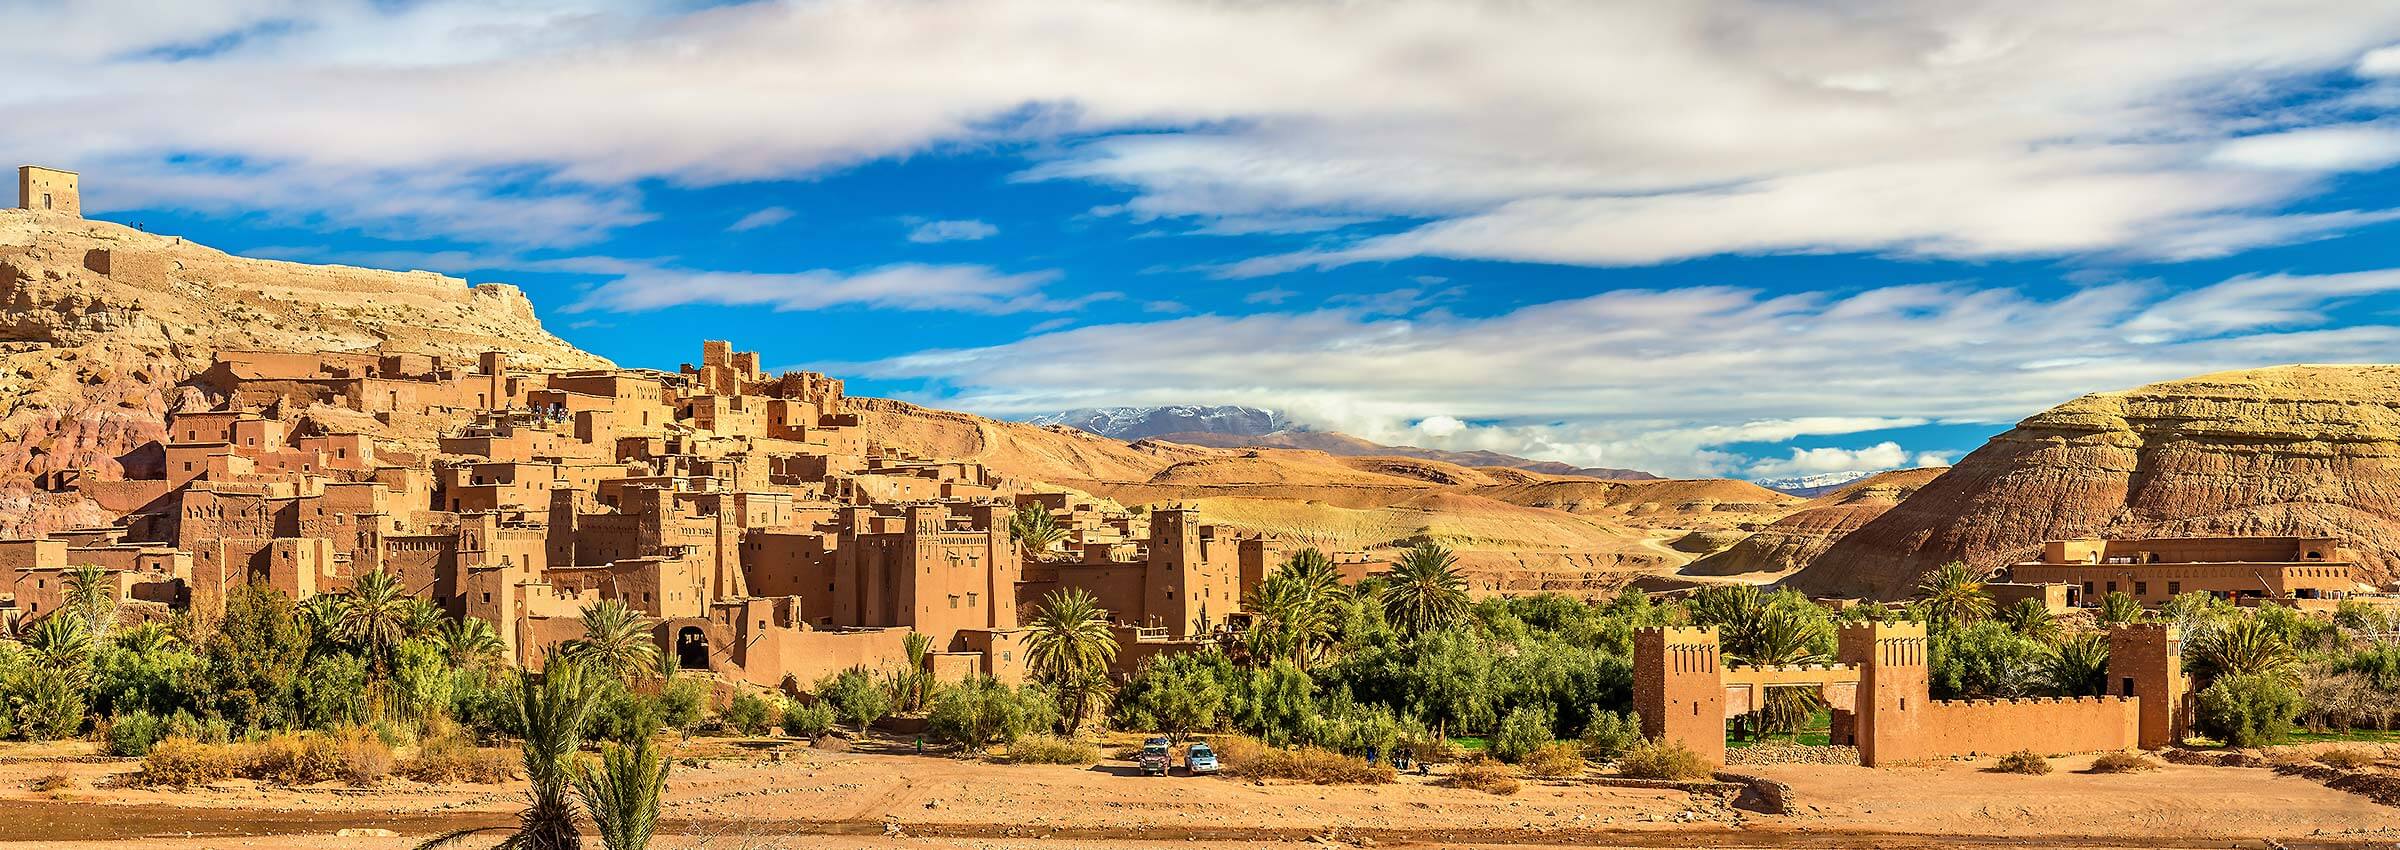 Märchenhafte Städte, einzigartige Landschaften: Singlereise nach Marokko